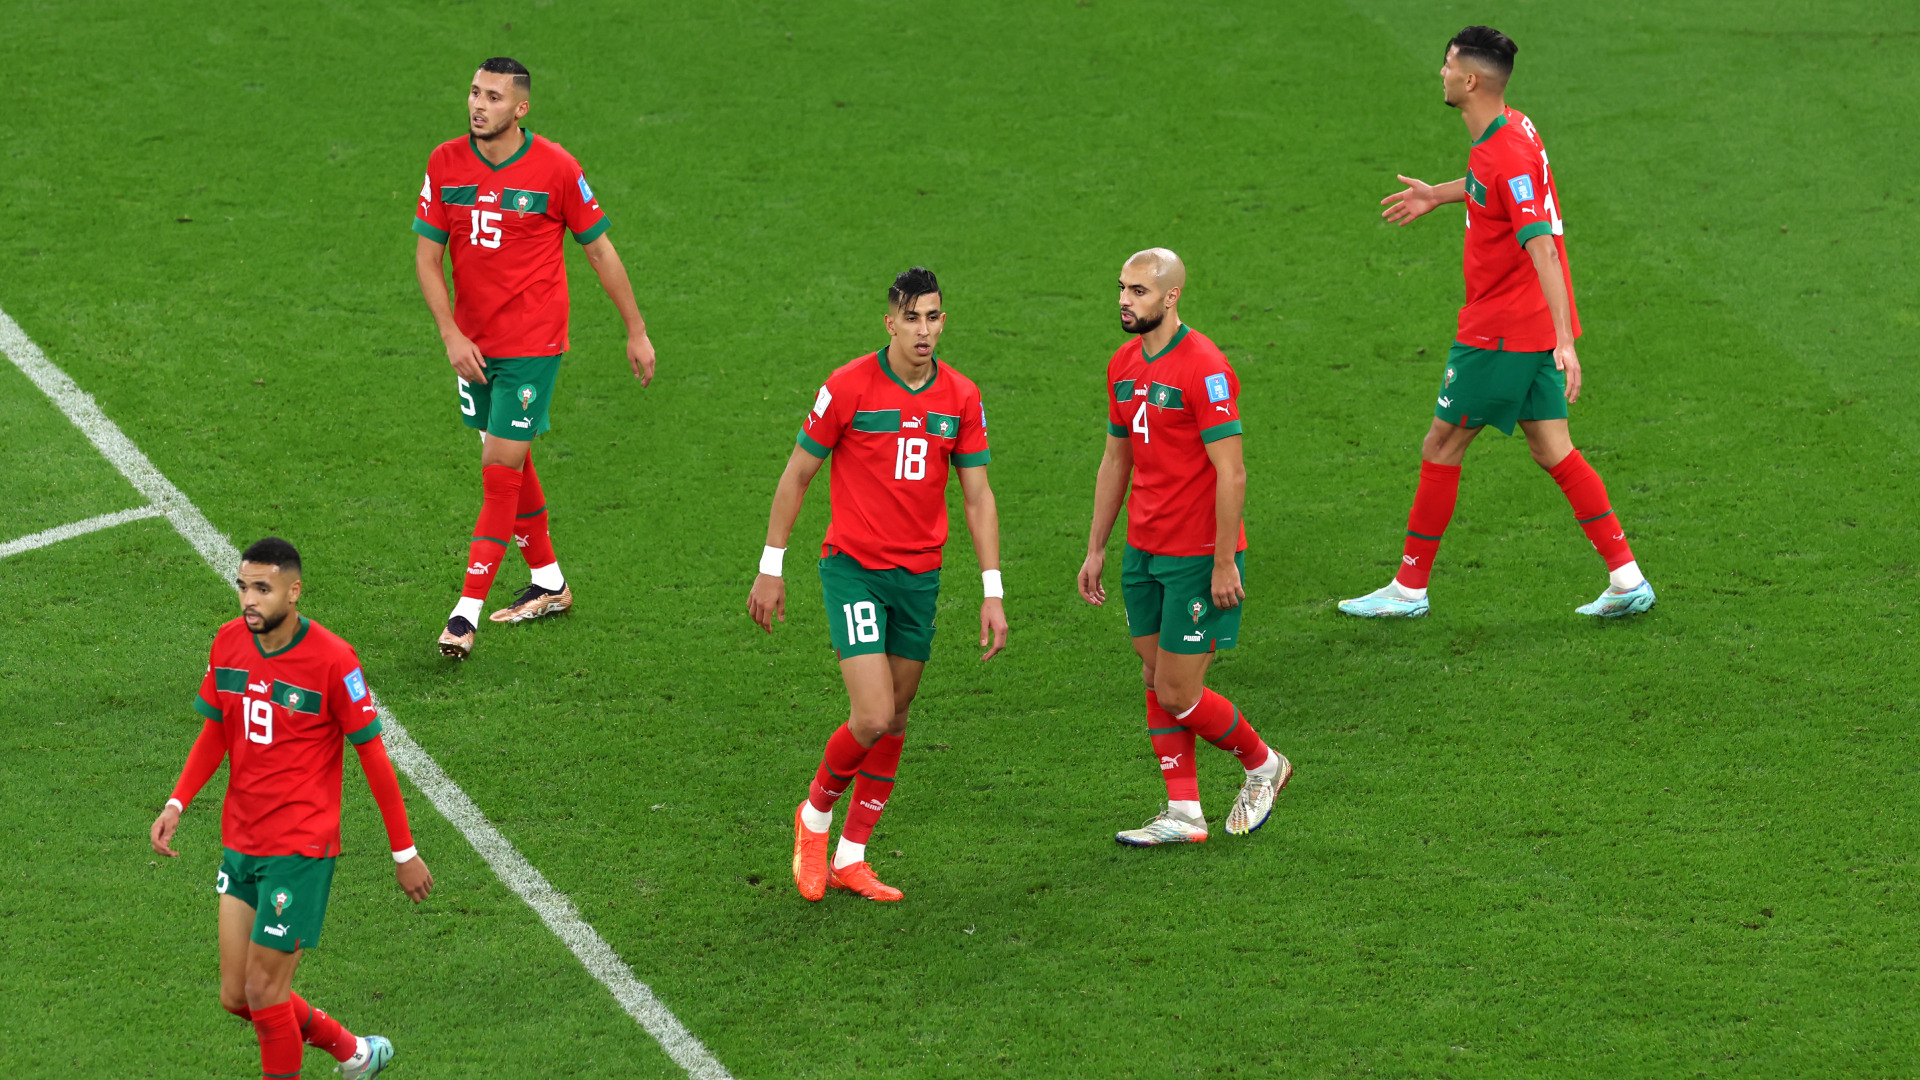 Maroc Portugal Defense catenaccio